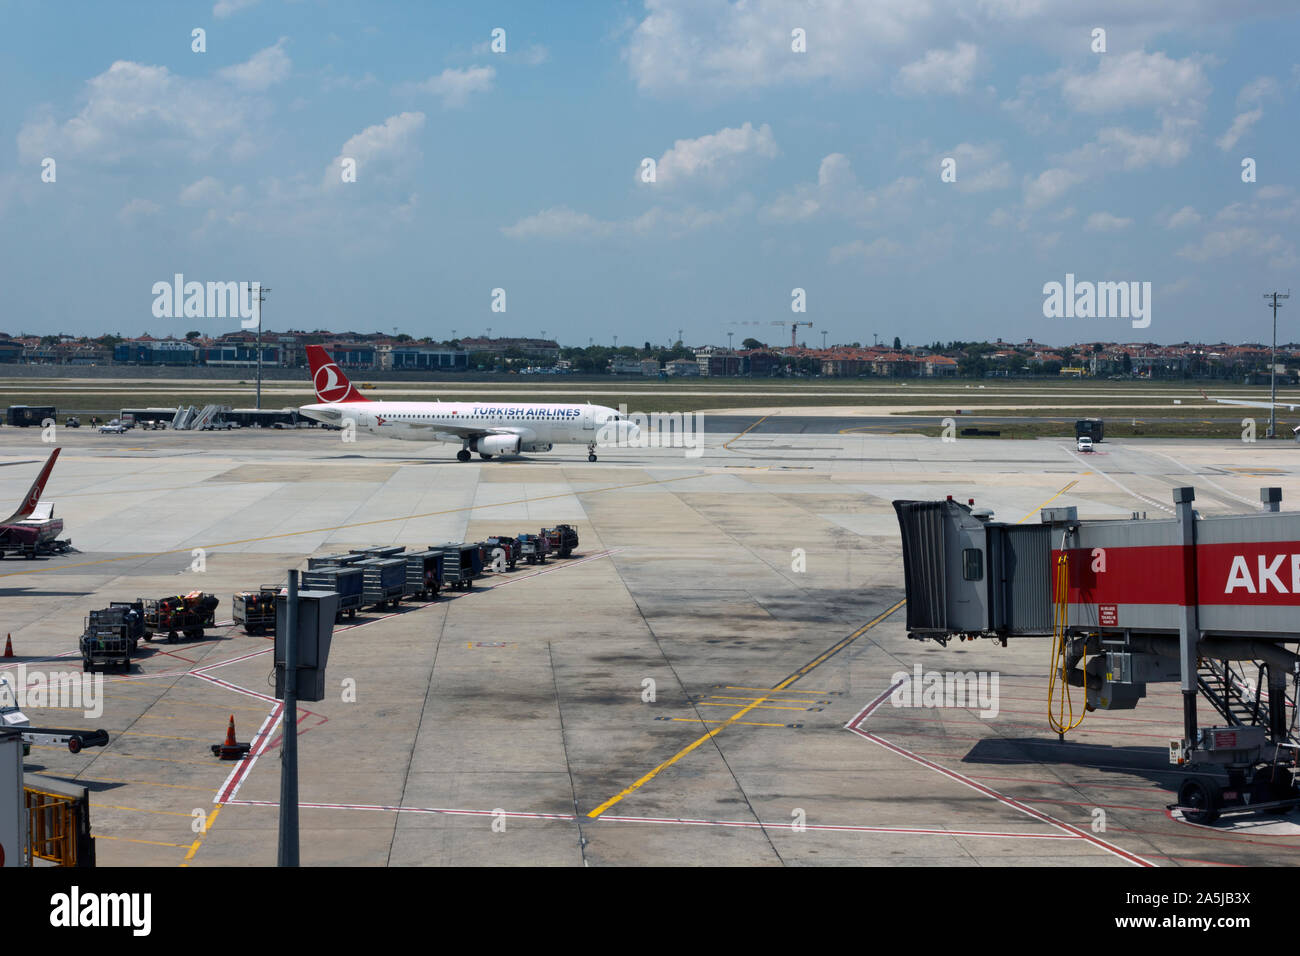 Turkish Airlines avion arrivant à l'aéroport d'Istanbul, Istanbul, Turquie. Banque D'Images